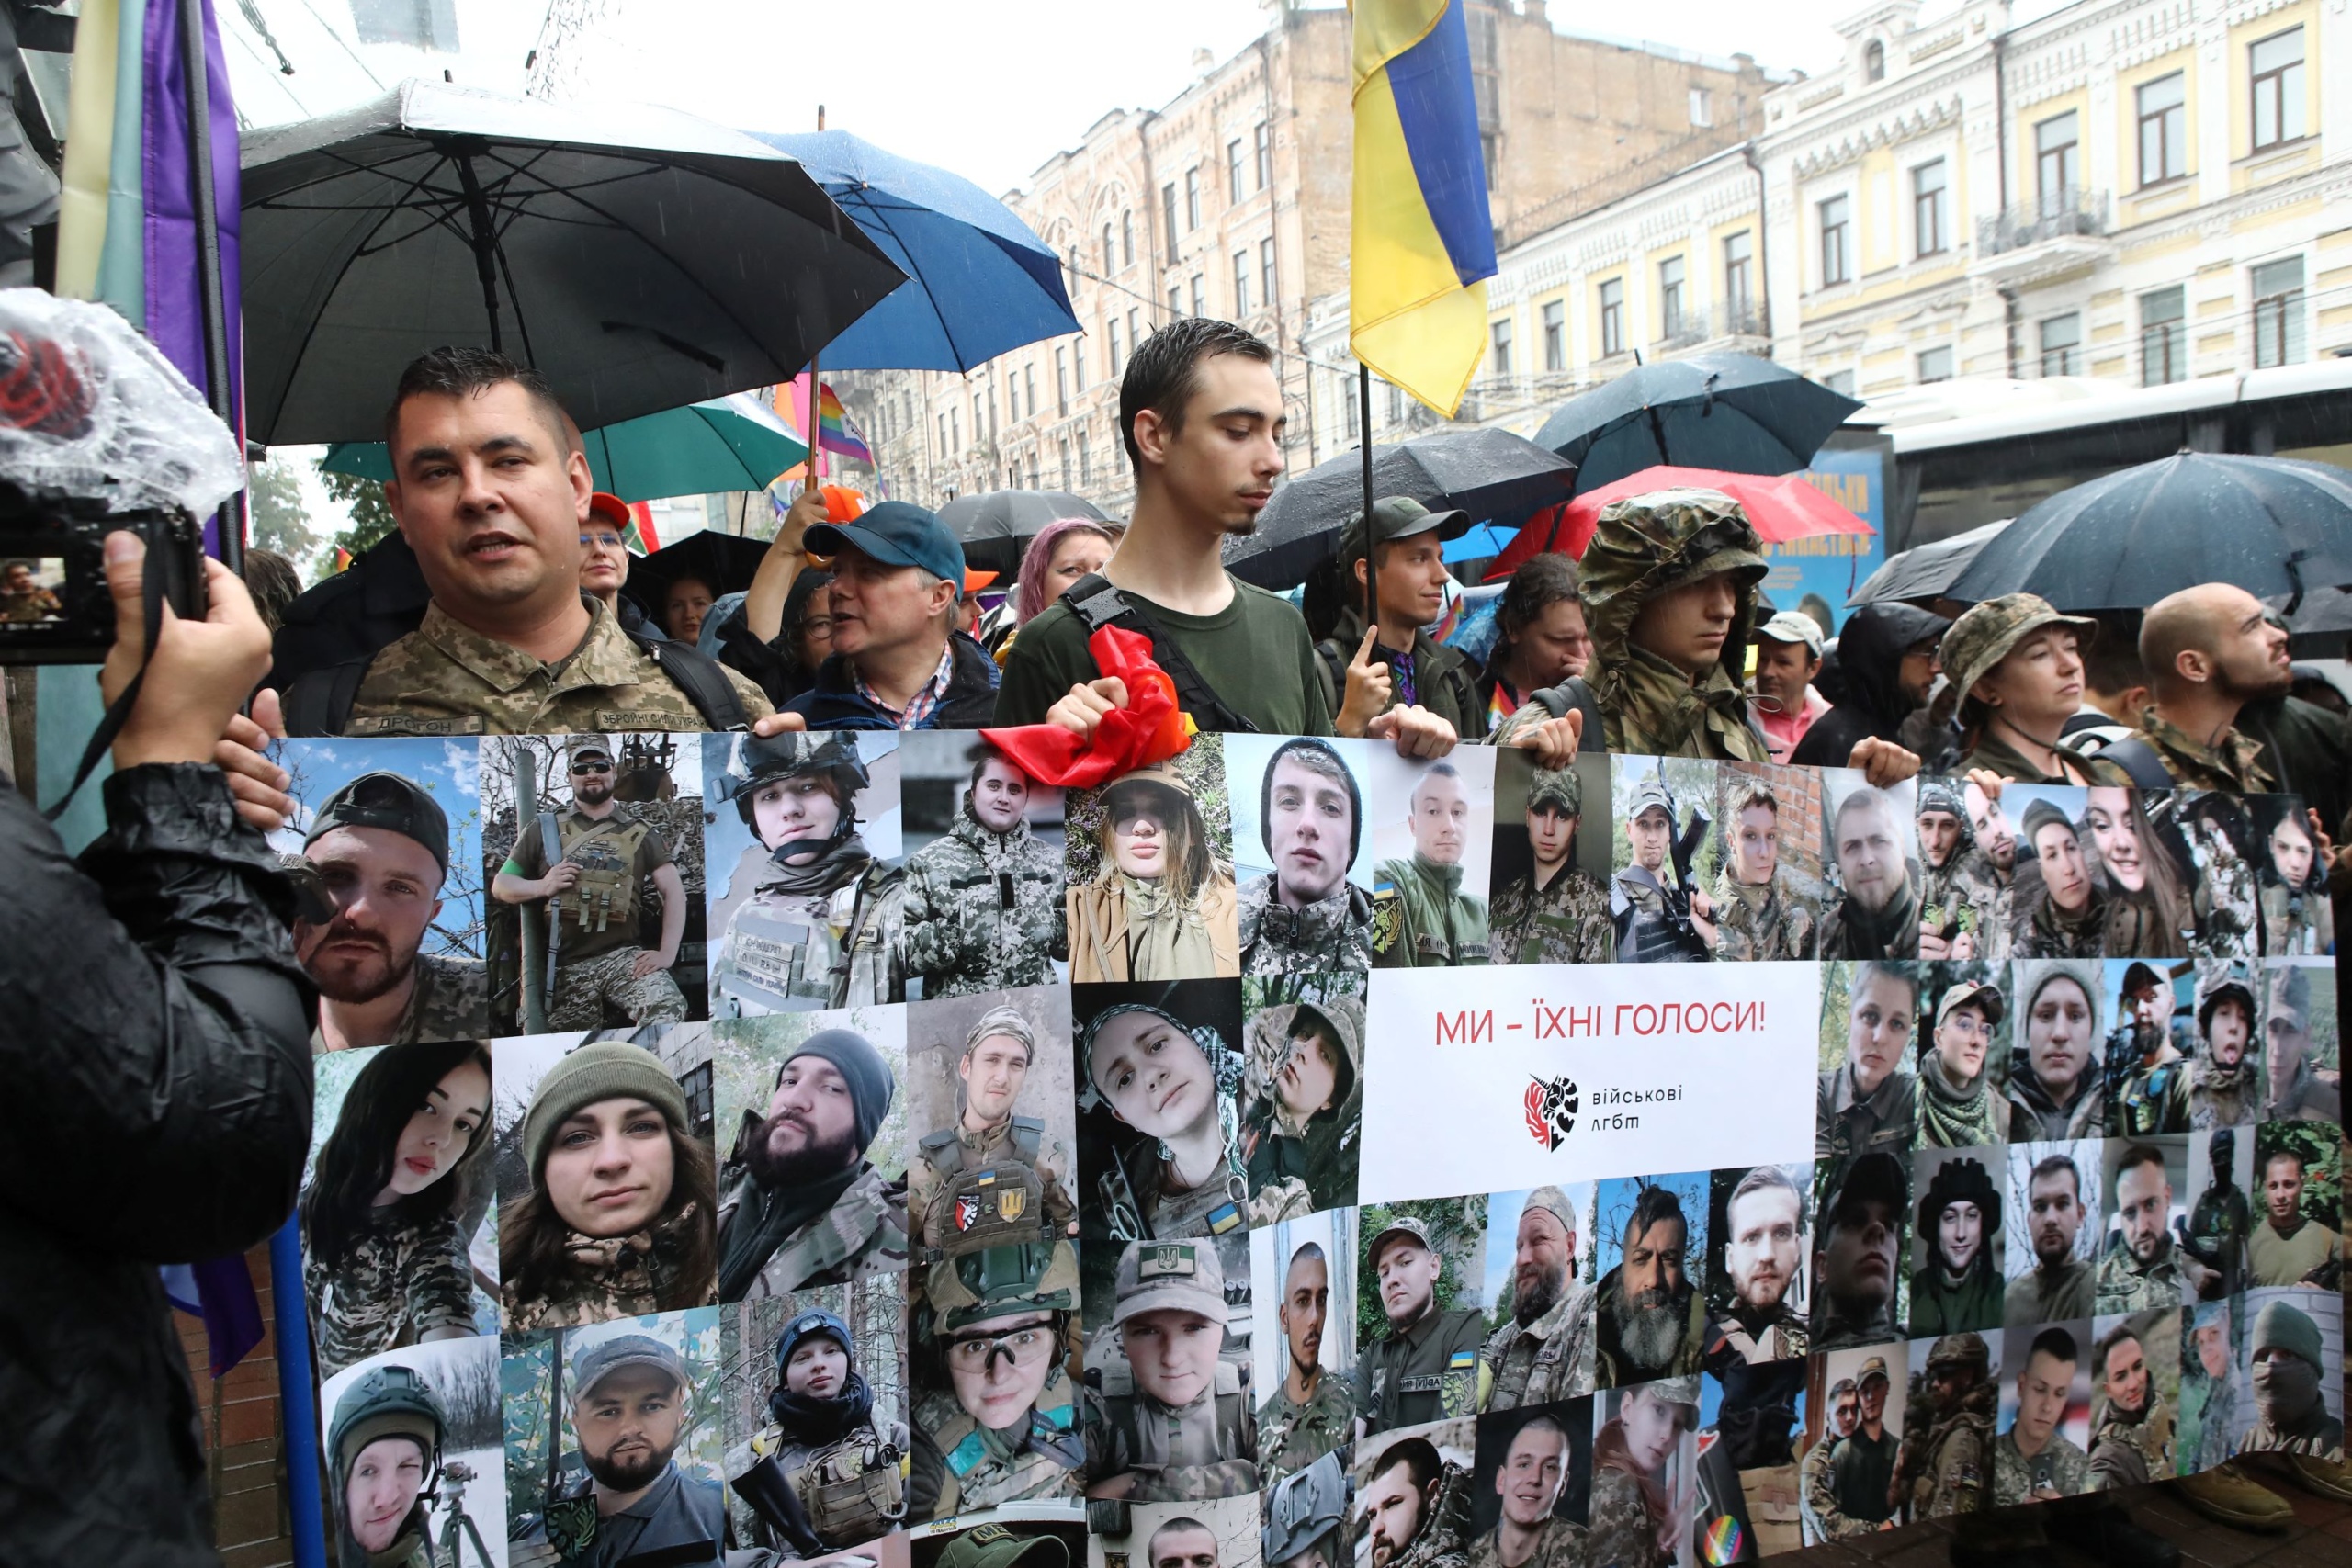 Kijevben a szexuális kisebbségek láthatósága mellett hangsúlyos téma volt a háború is.